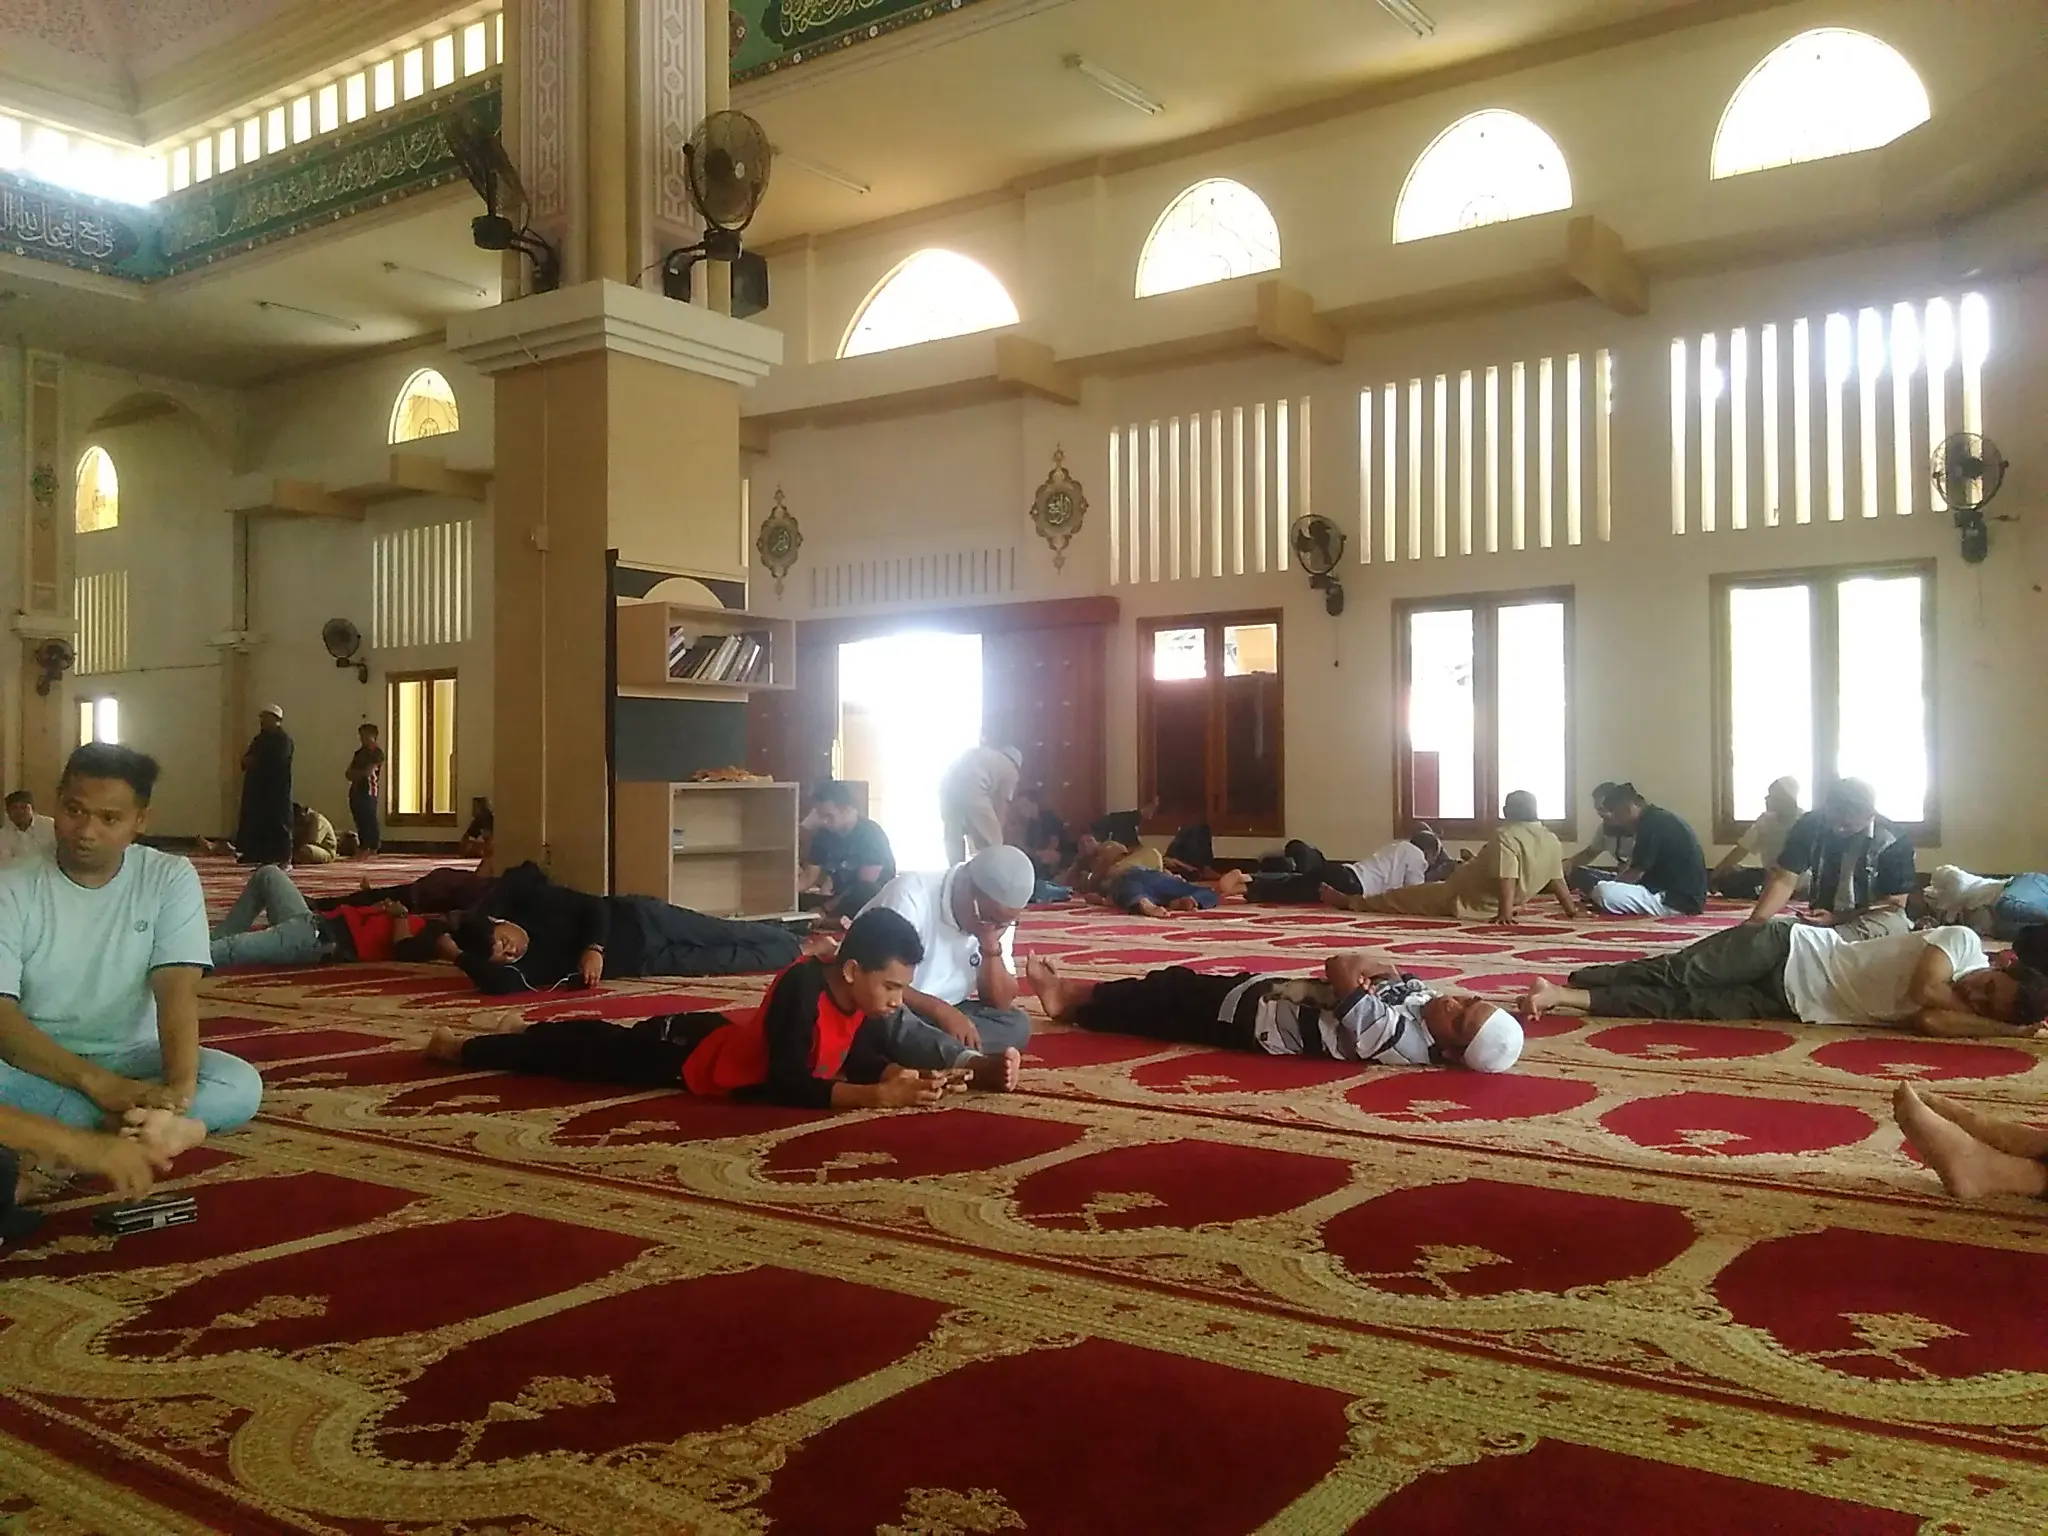 Banyak orang yang beristirahat di masjid saat menjalani puasa Ramadan. (Liputan6.com/Aldiansyah Mochammad Fachrurrozy).